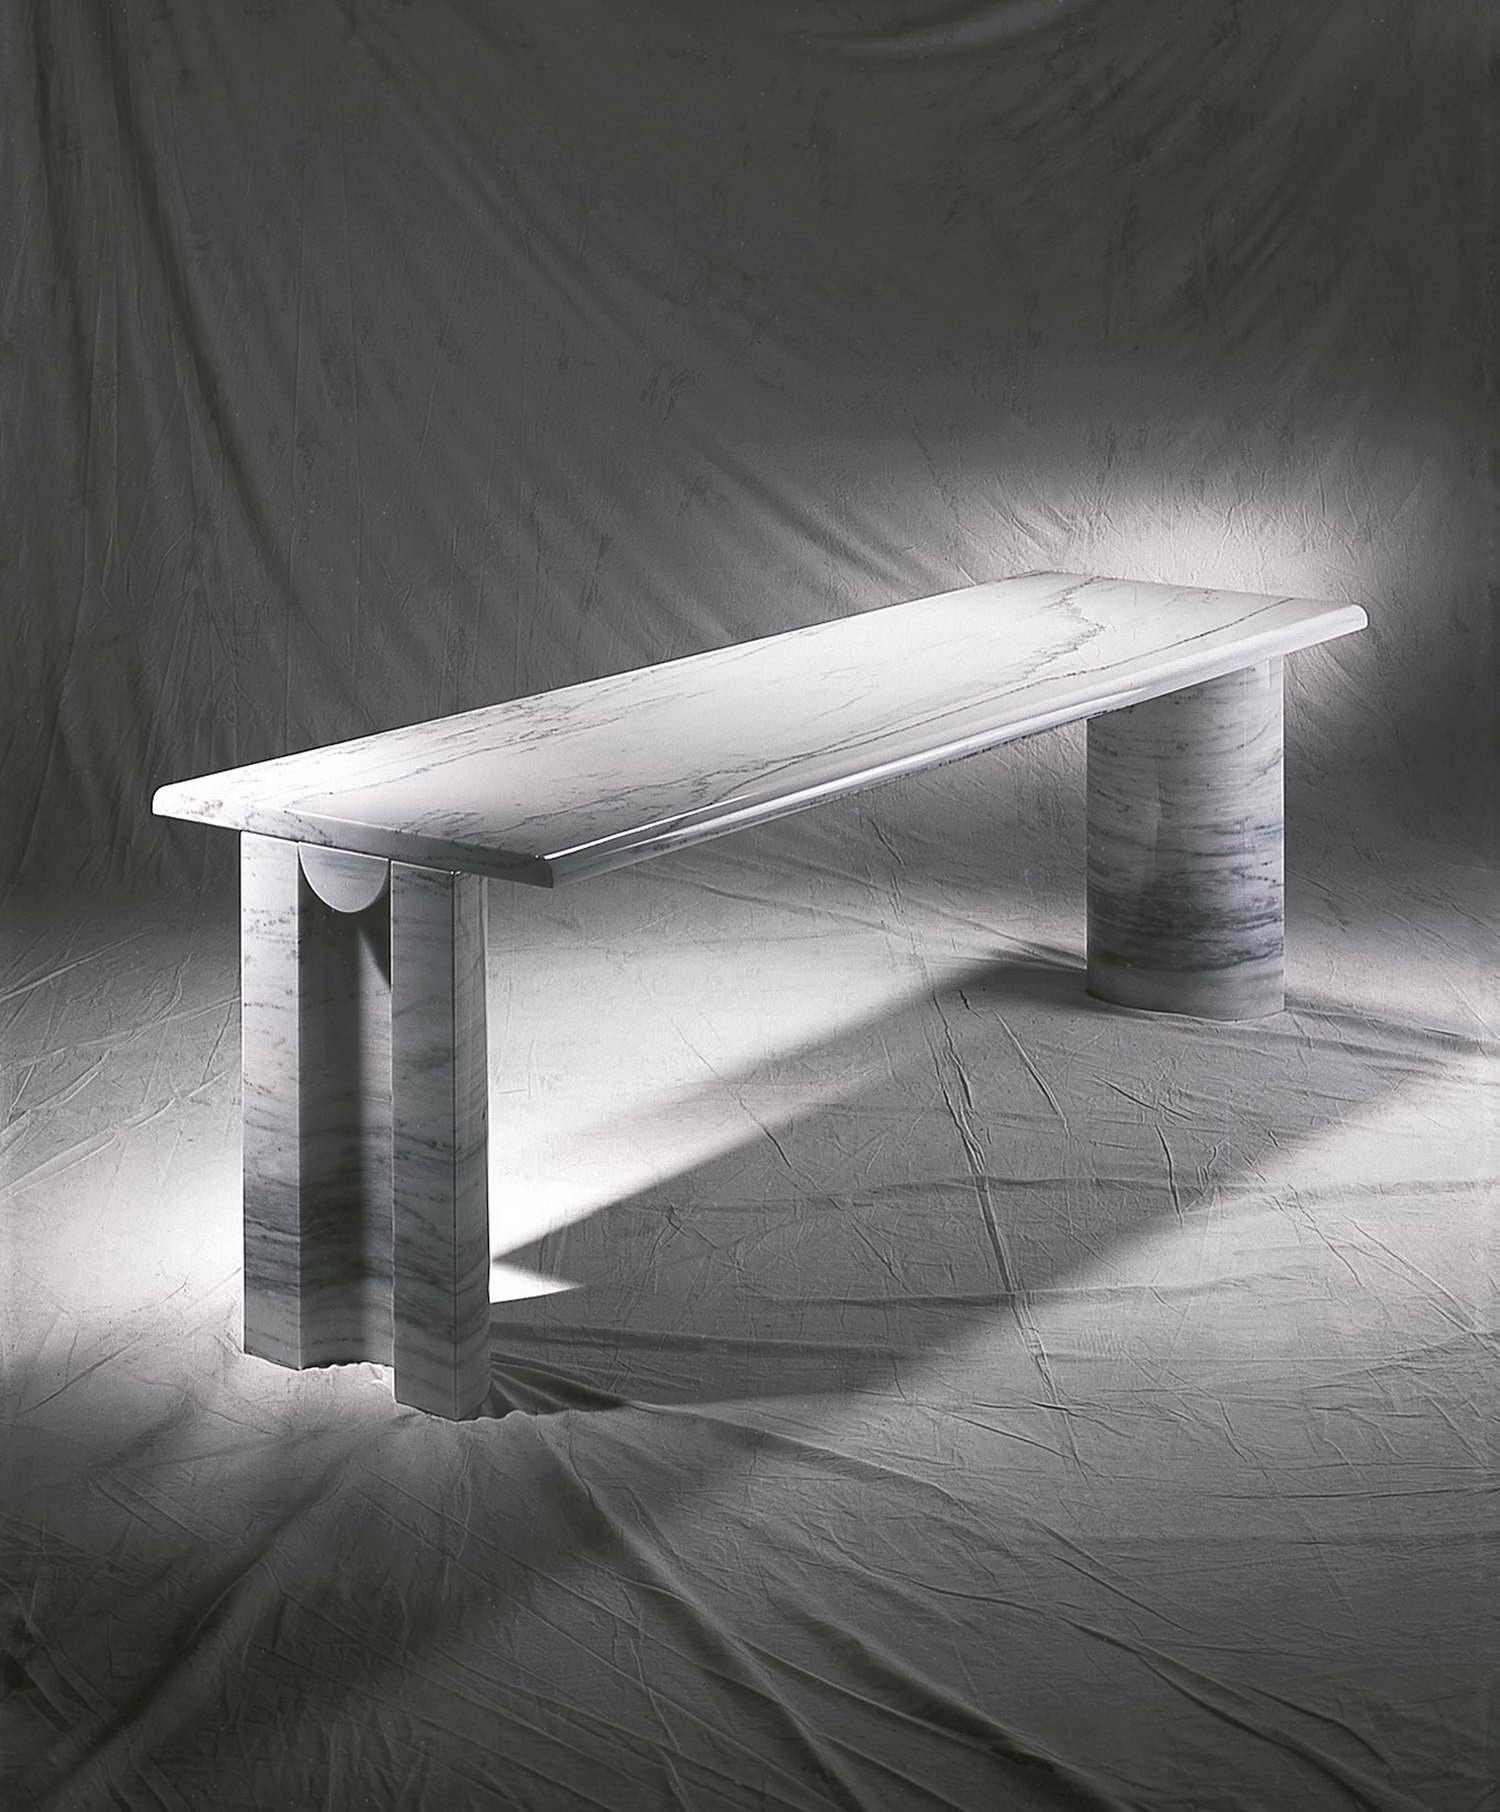 Name: Pariana.
Marble table designed by Pier Alessandro Giusti - Egidio Di Rosa.
Marble low table.
Size: Cm 140 x 70 x H 38.
Materials: Bianco carrara, nero marquina
Designer: P.A Giusti, E. Di Rosa.